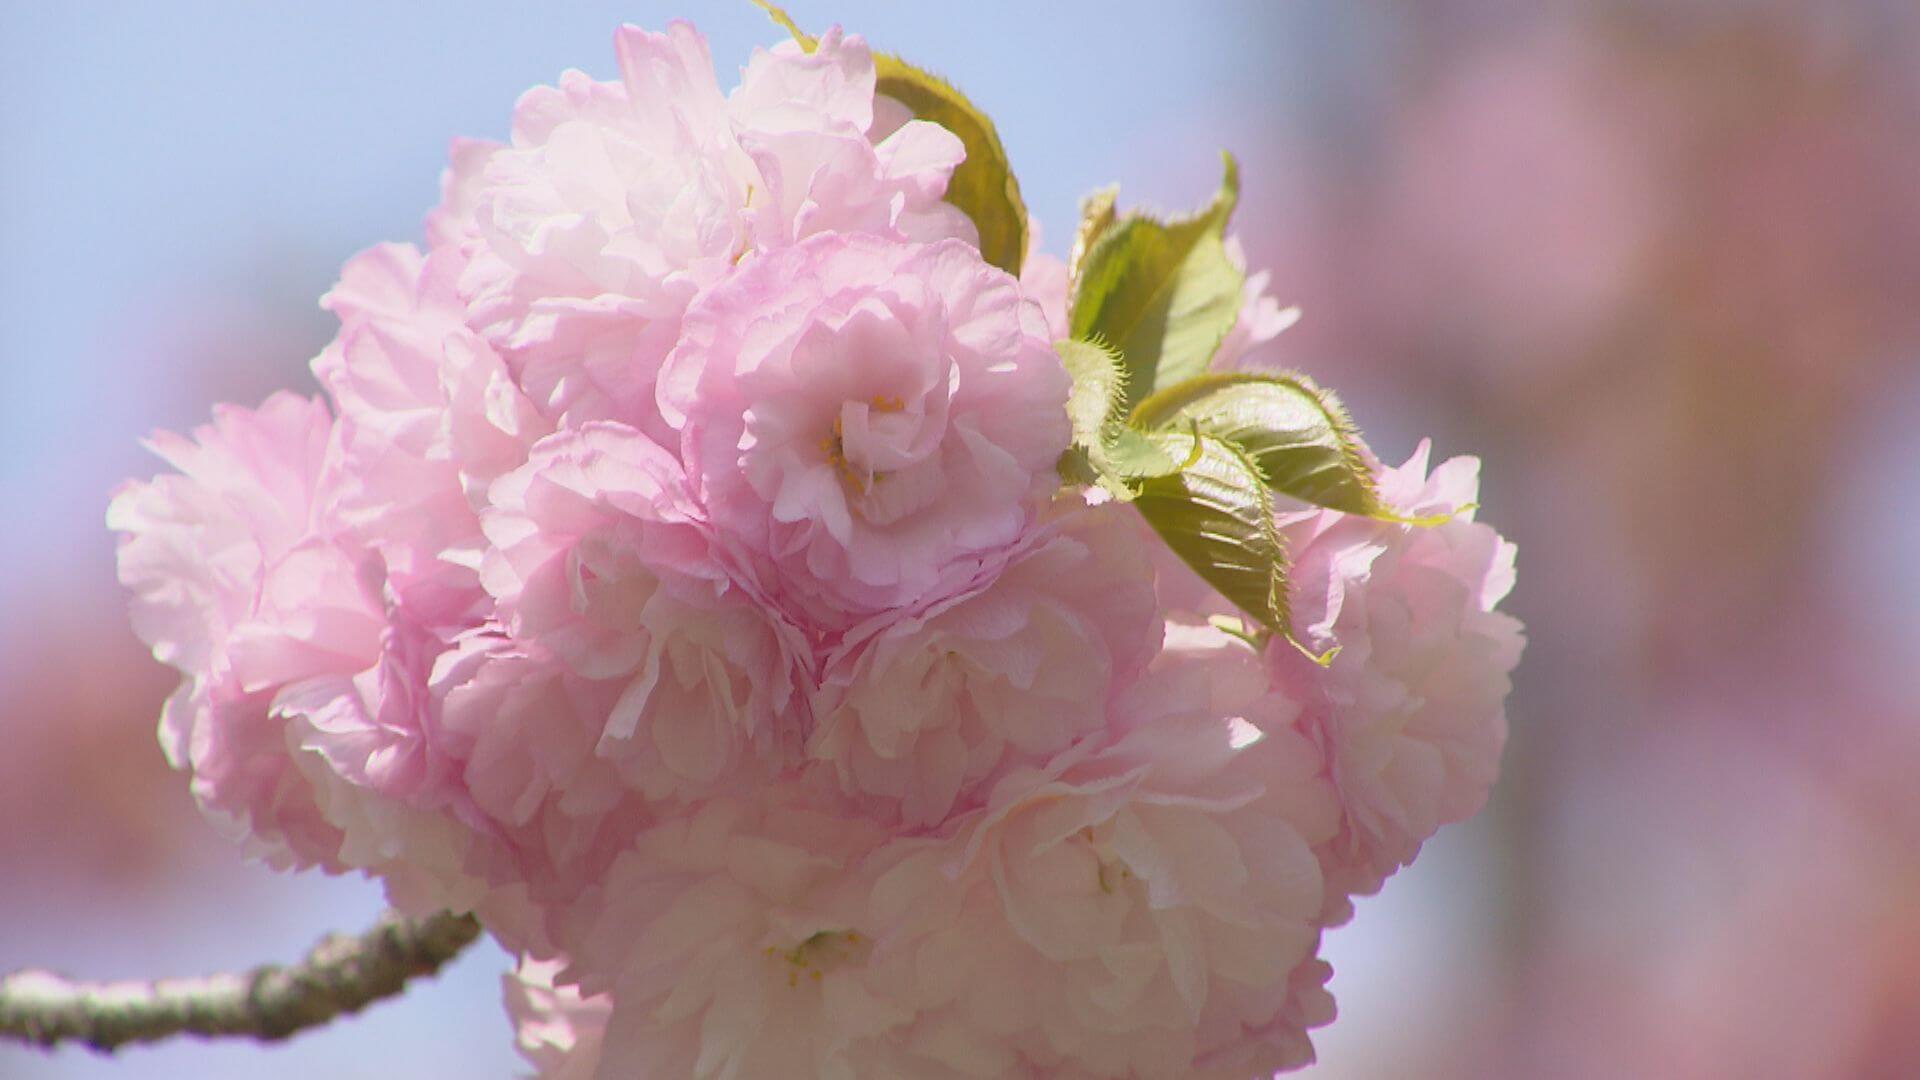 広島市で今年初の夏日 佐伯区の造幣局では 花のまわりみち 始まる ニュース 報道 Home広島ホームテレビ